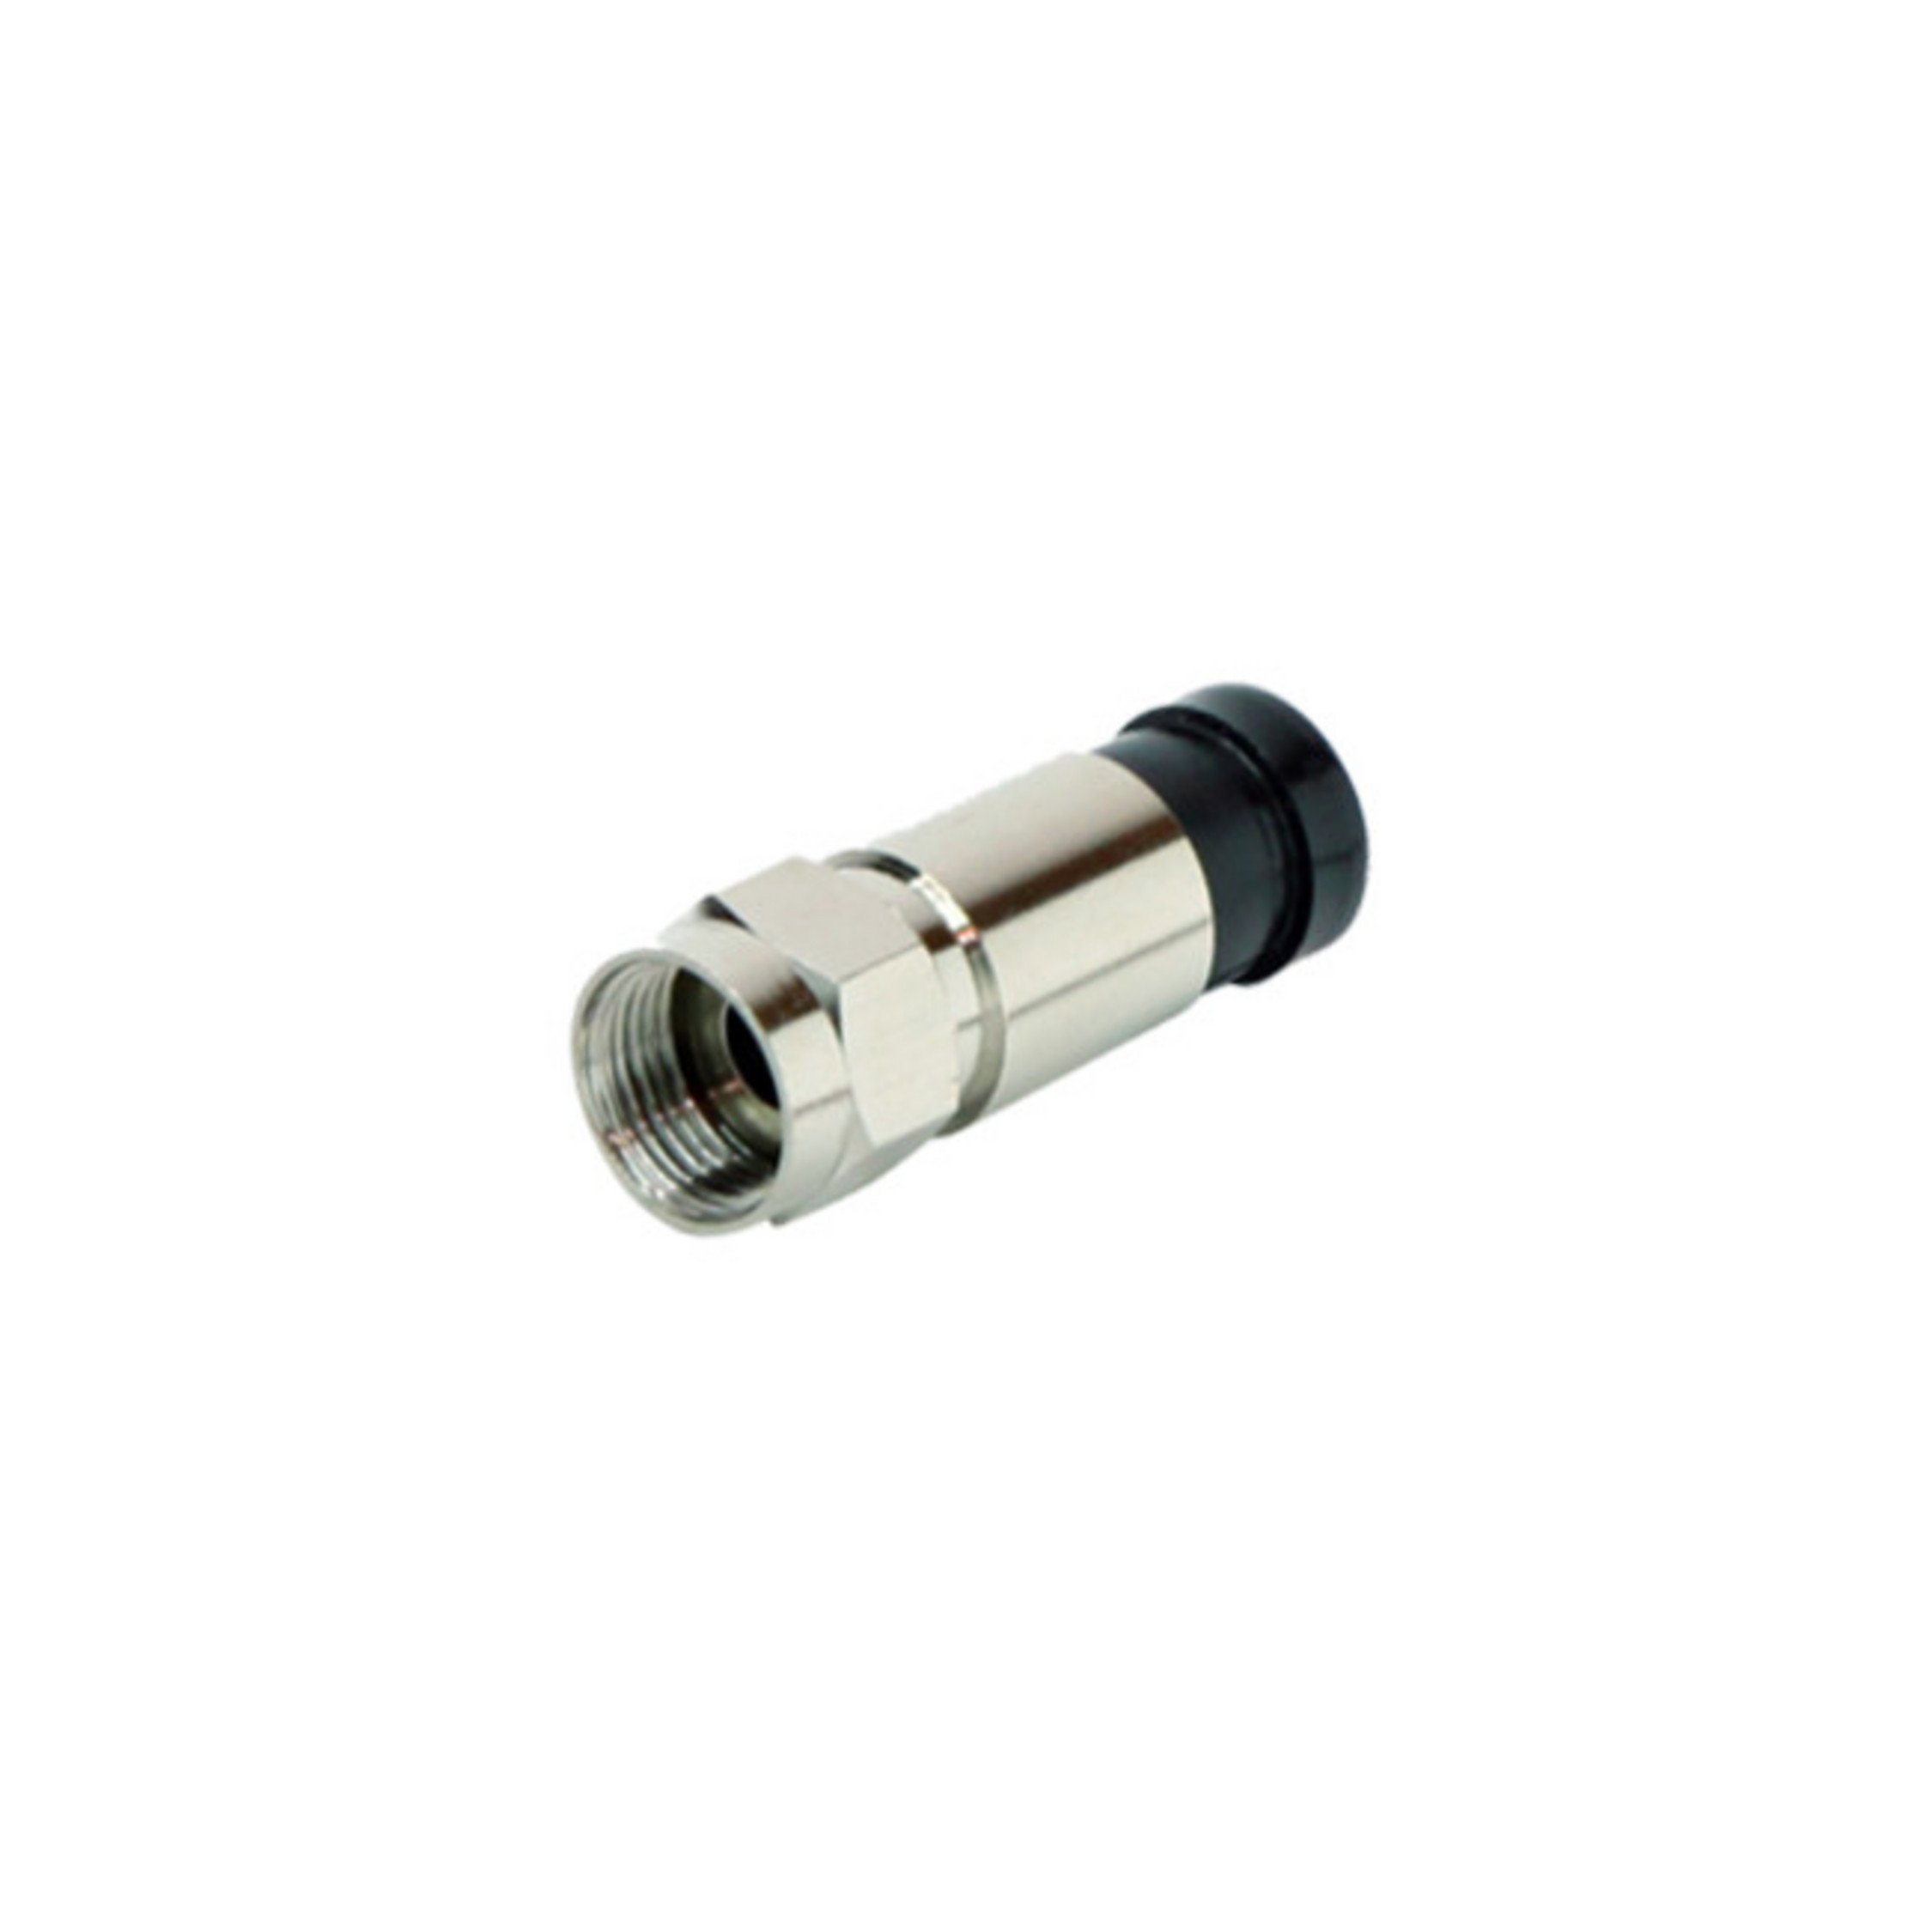 S/CONN SAT CONNECTIVITY 7mm für Stecker MAXIMUM F-Kompressionstecker Kabel Adapter &